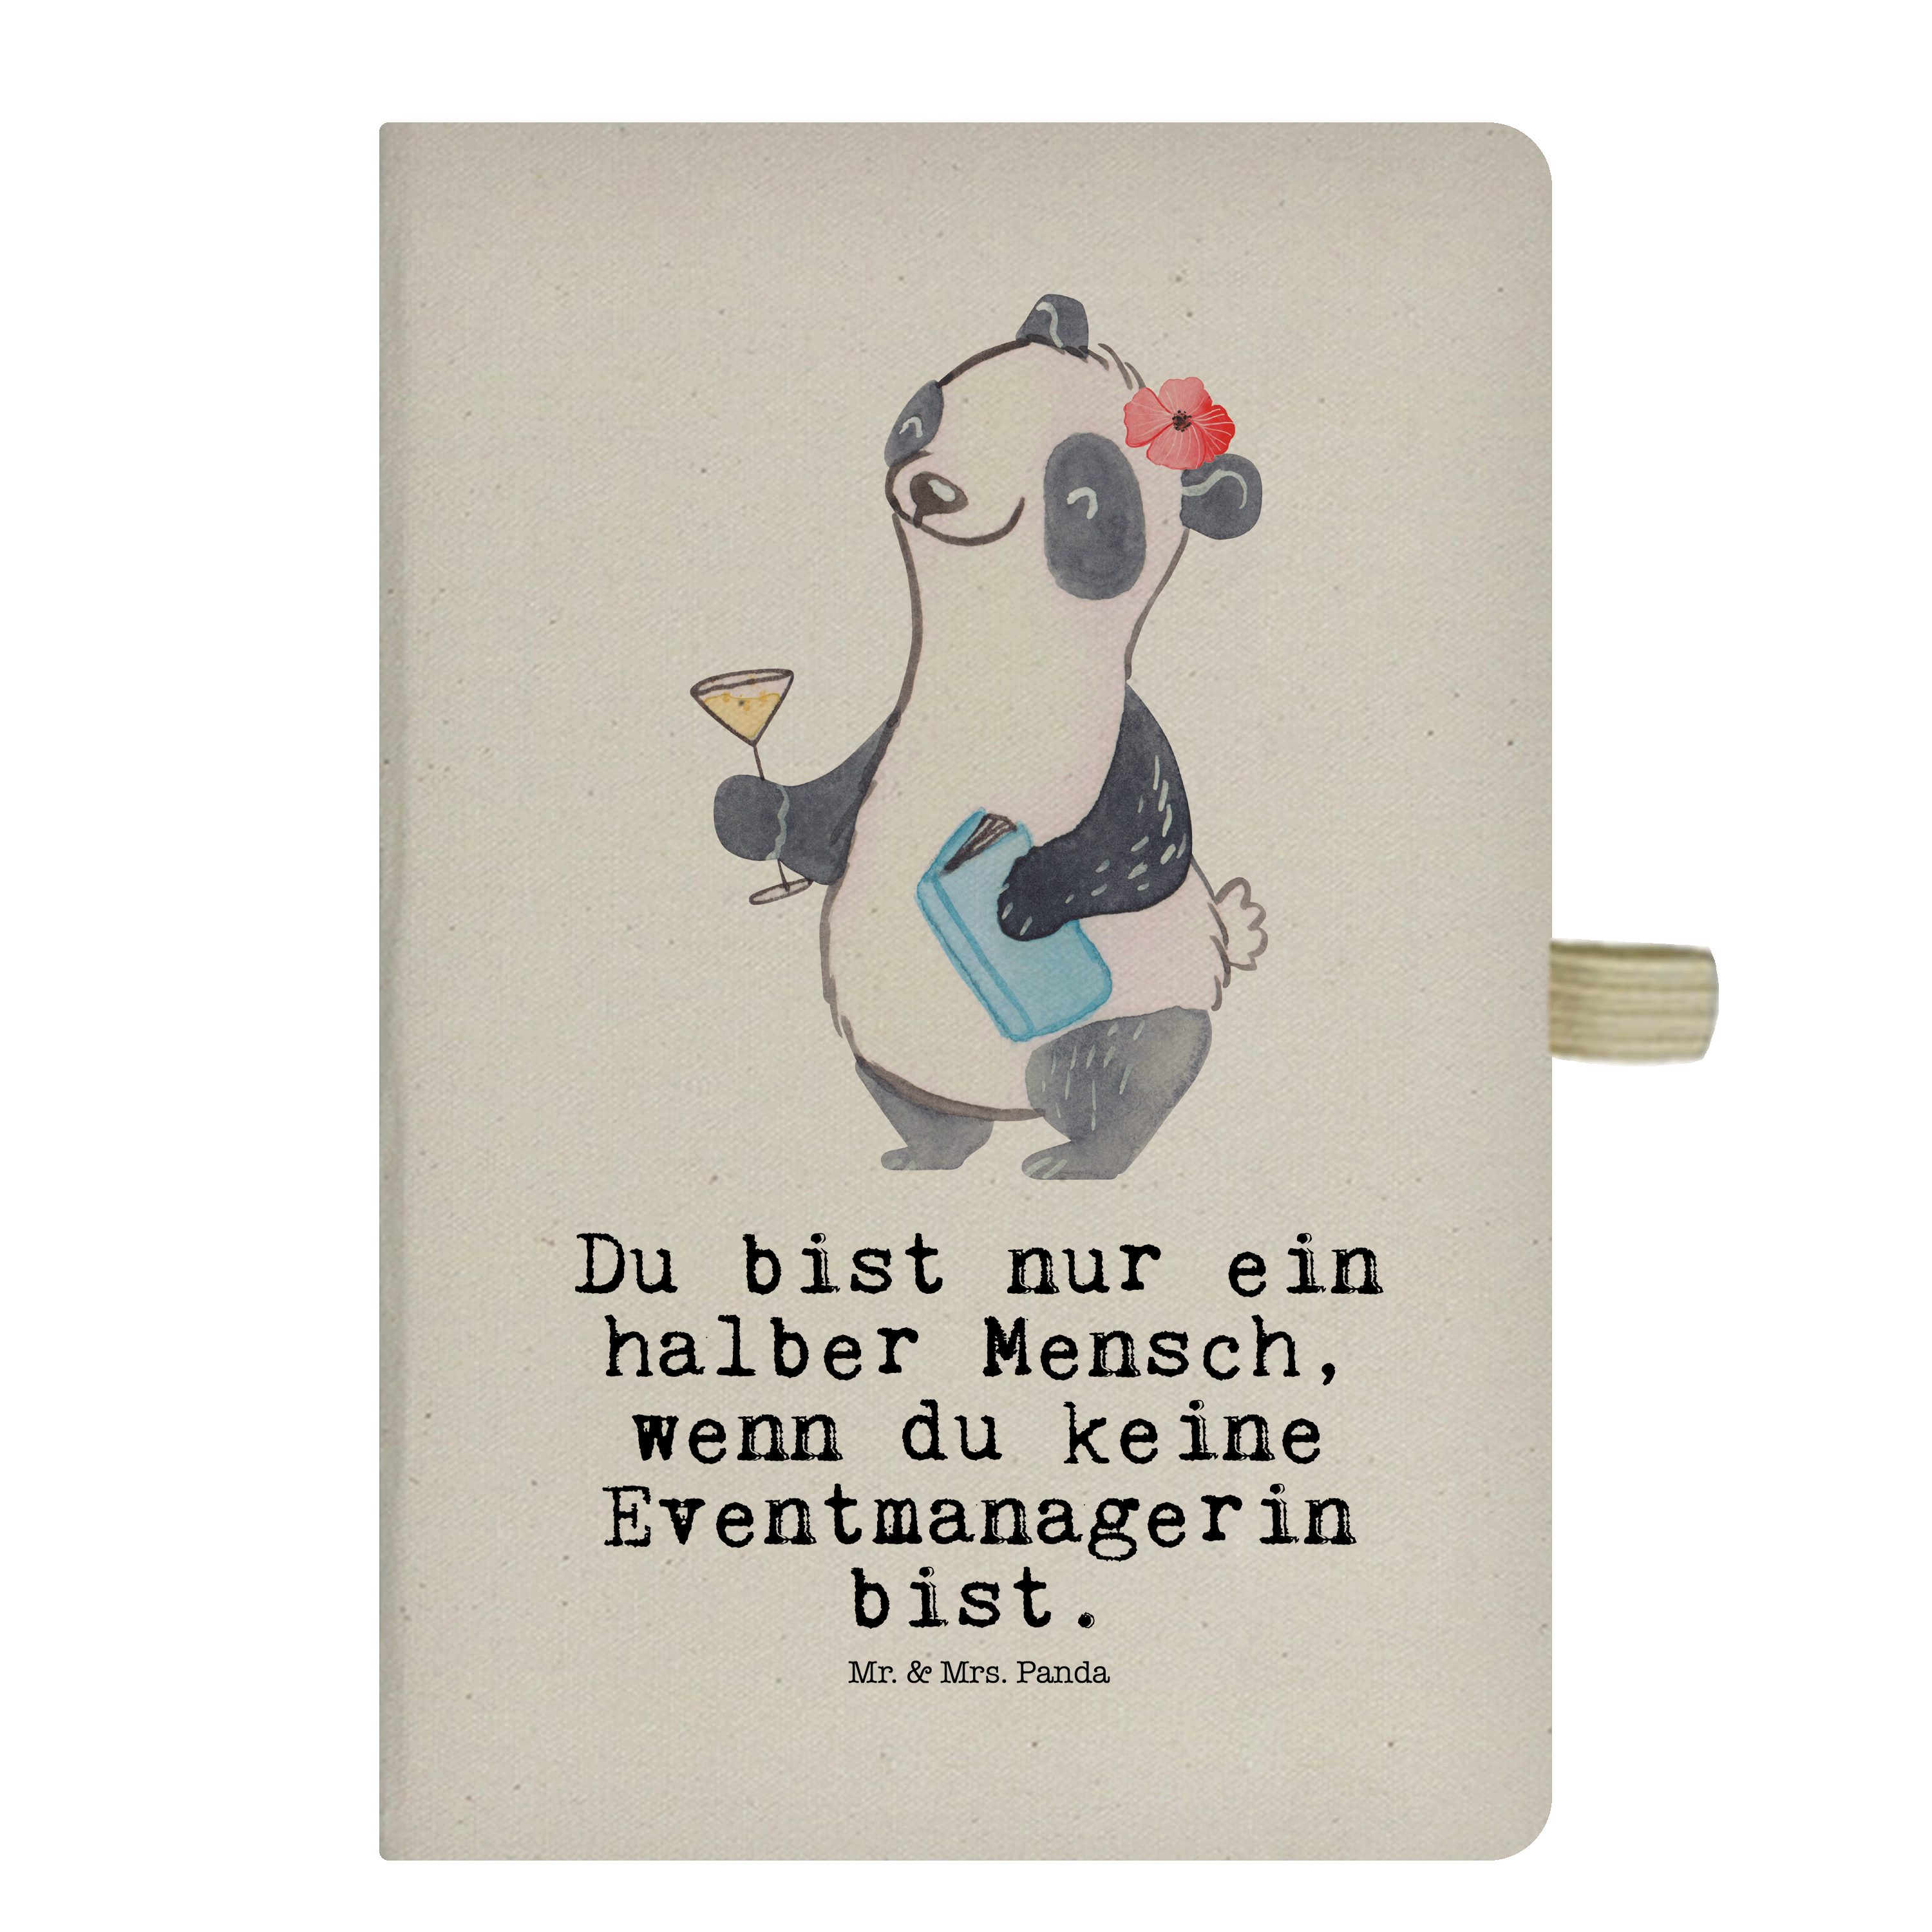 Mr. & Mrs. Panda Notizbuch Eventmanagerin mit Herz - Transparent - Geschenk, Promoterin, Veranst Mr. & Mrs. Panda